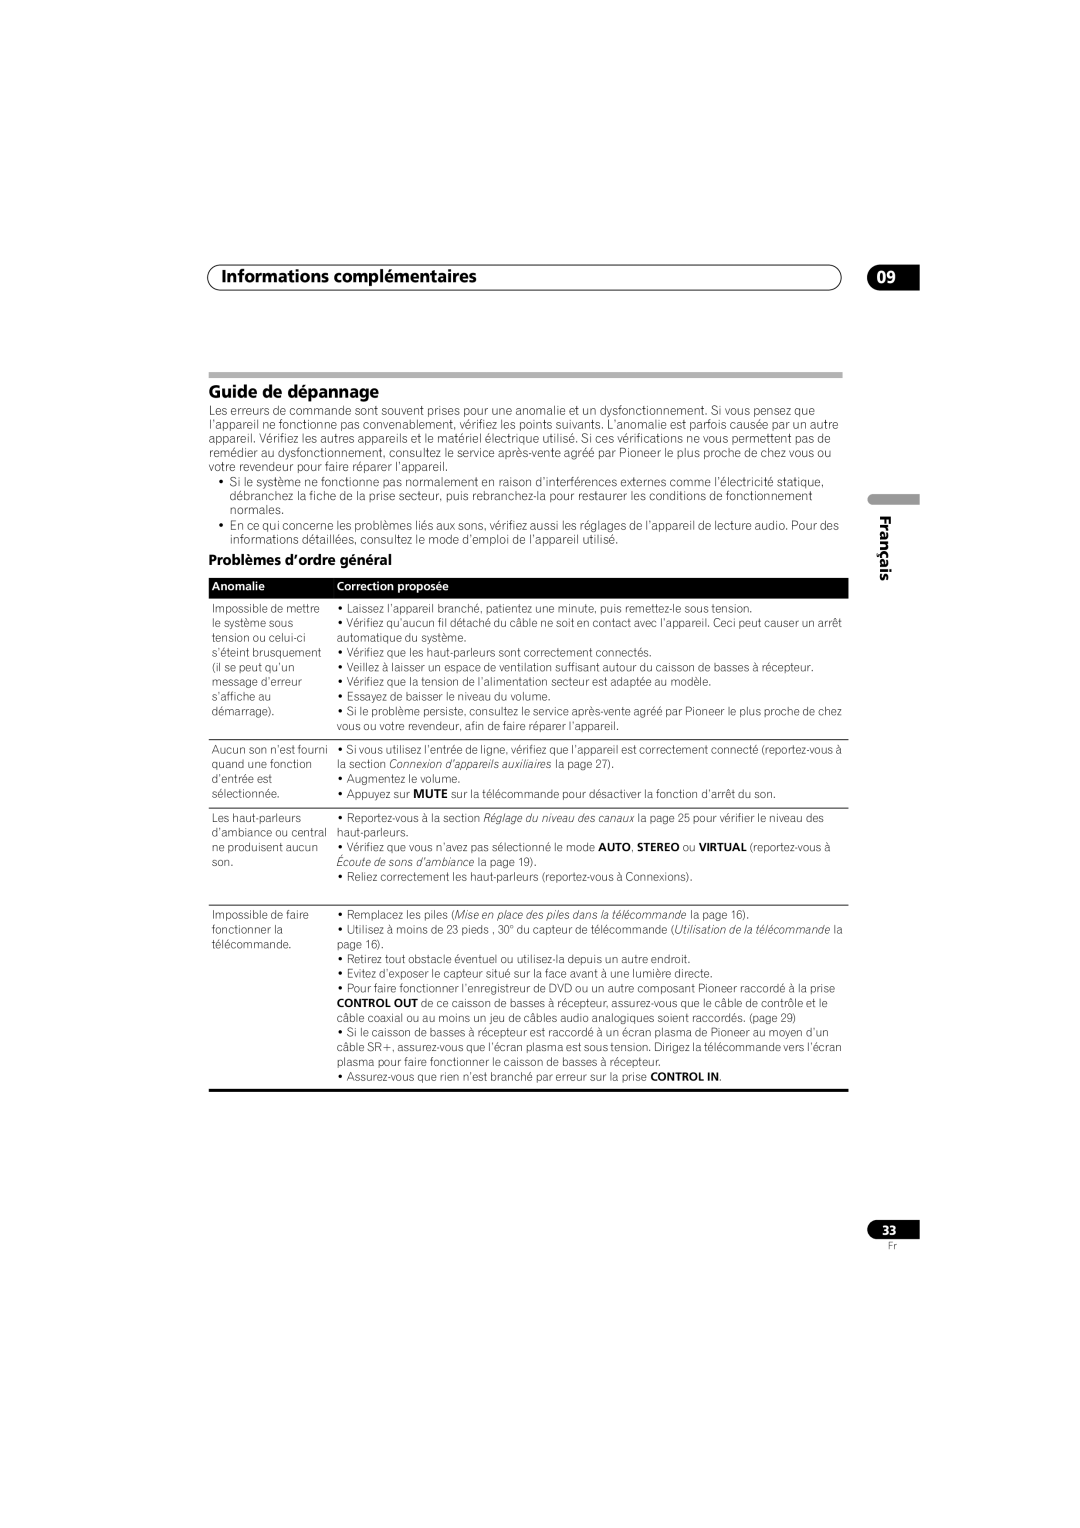 Pioneer SX-SW260, HTS-260 Informations complémentaires Guide de dépannage, Problèmes d’ordre général, Français, Anomalie 